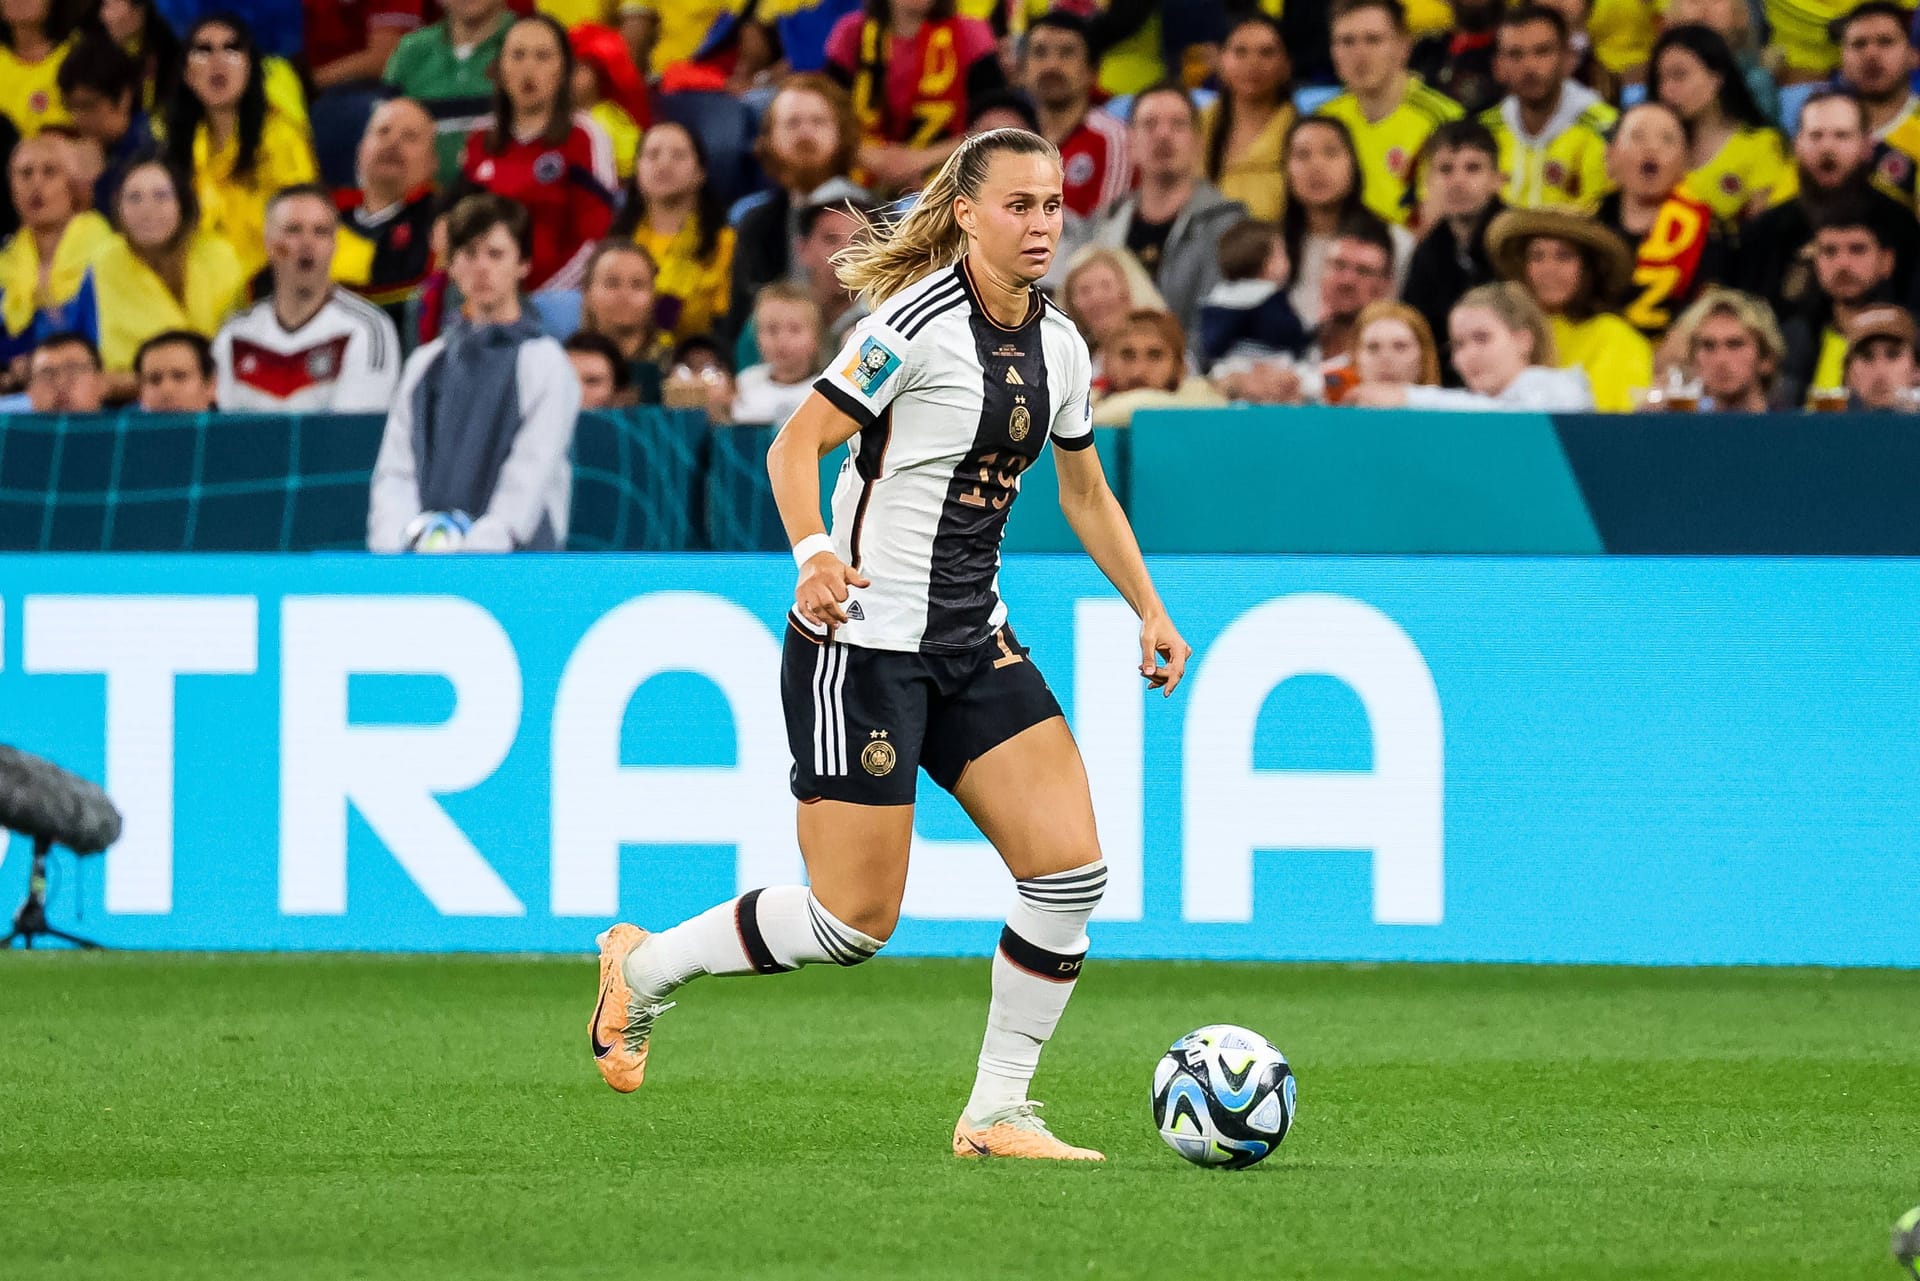 Klara Bühl (bis 76. Minute): Die Münchnerin fand nur schwer ins Spiel. Stark, wie sie nach Ballverlust zurück sprintete und sich die Kugel wieder eroberte (33. Minute). Manchmal einen Tick zu verspielt und ungenau (36.). Konnte ihre Stärken kaum ausspielen. Note 3